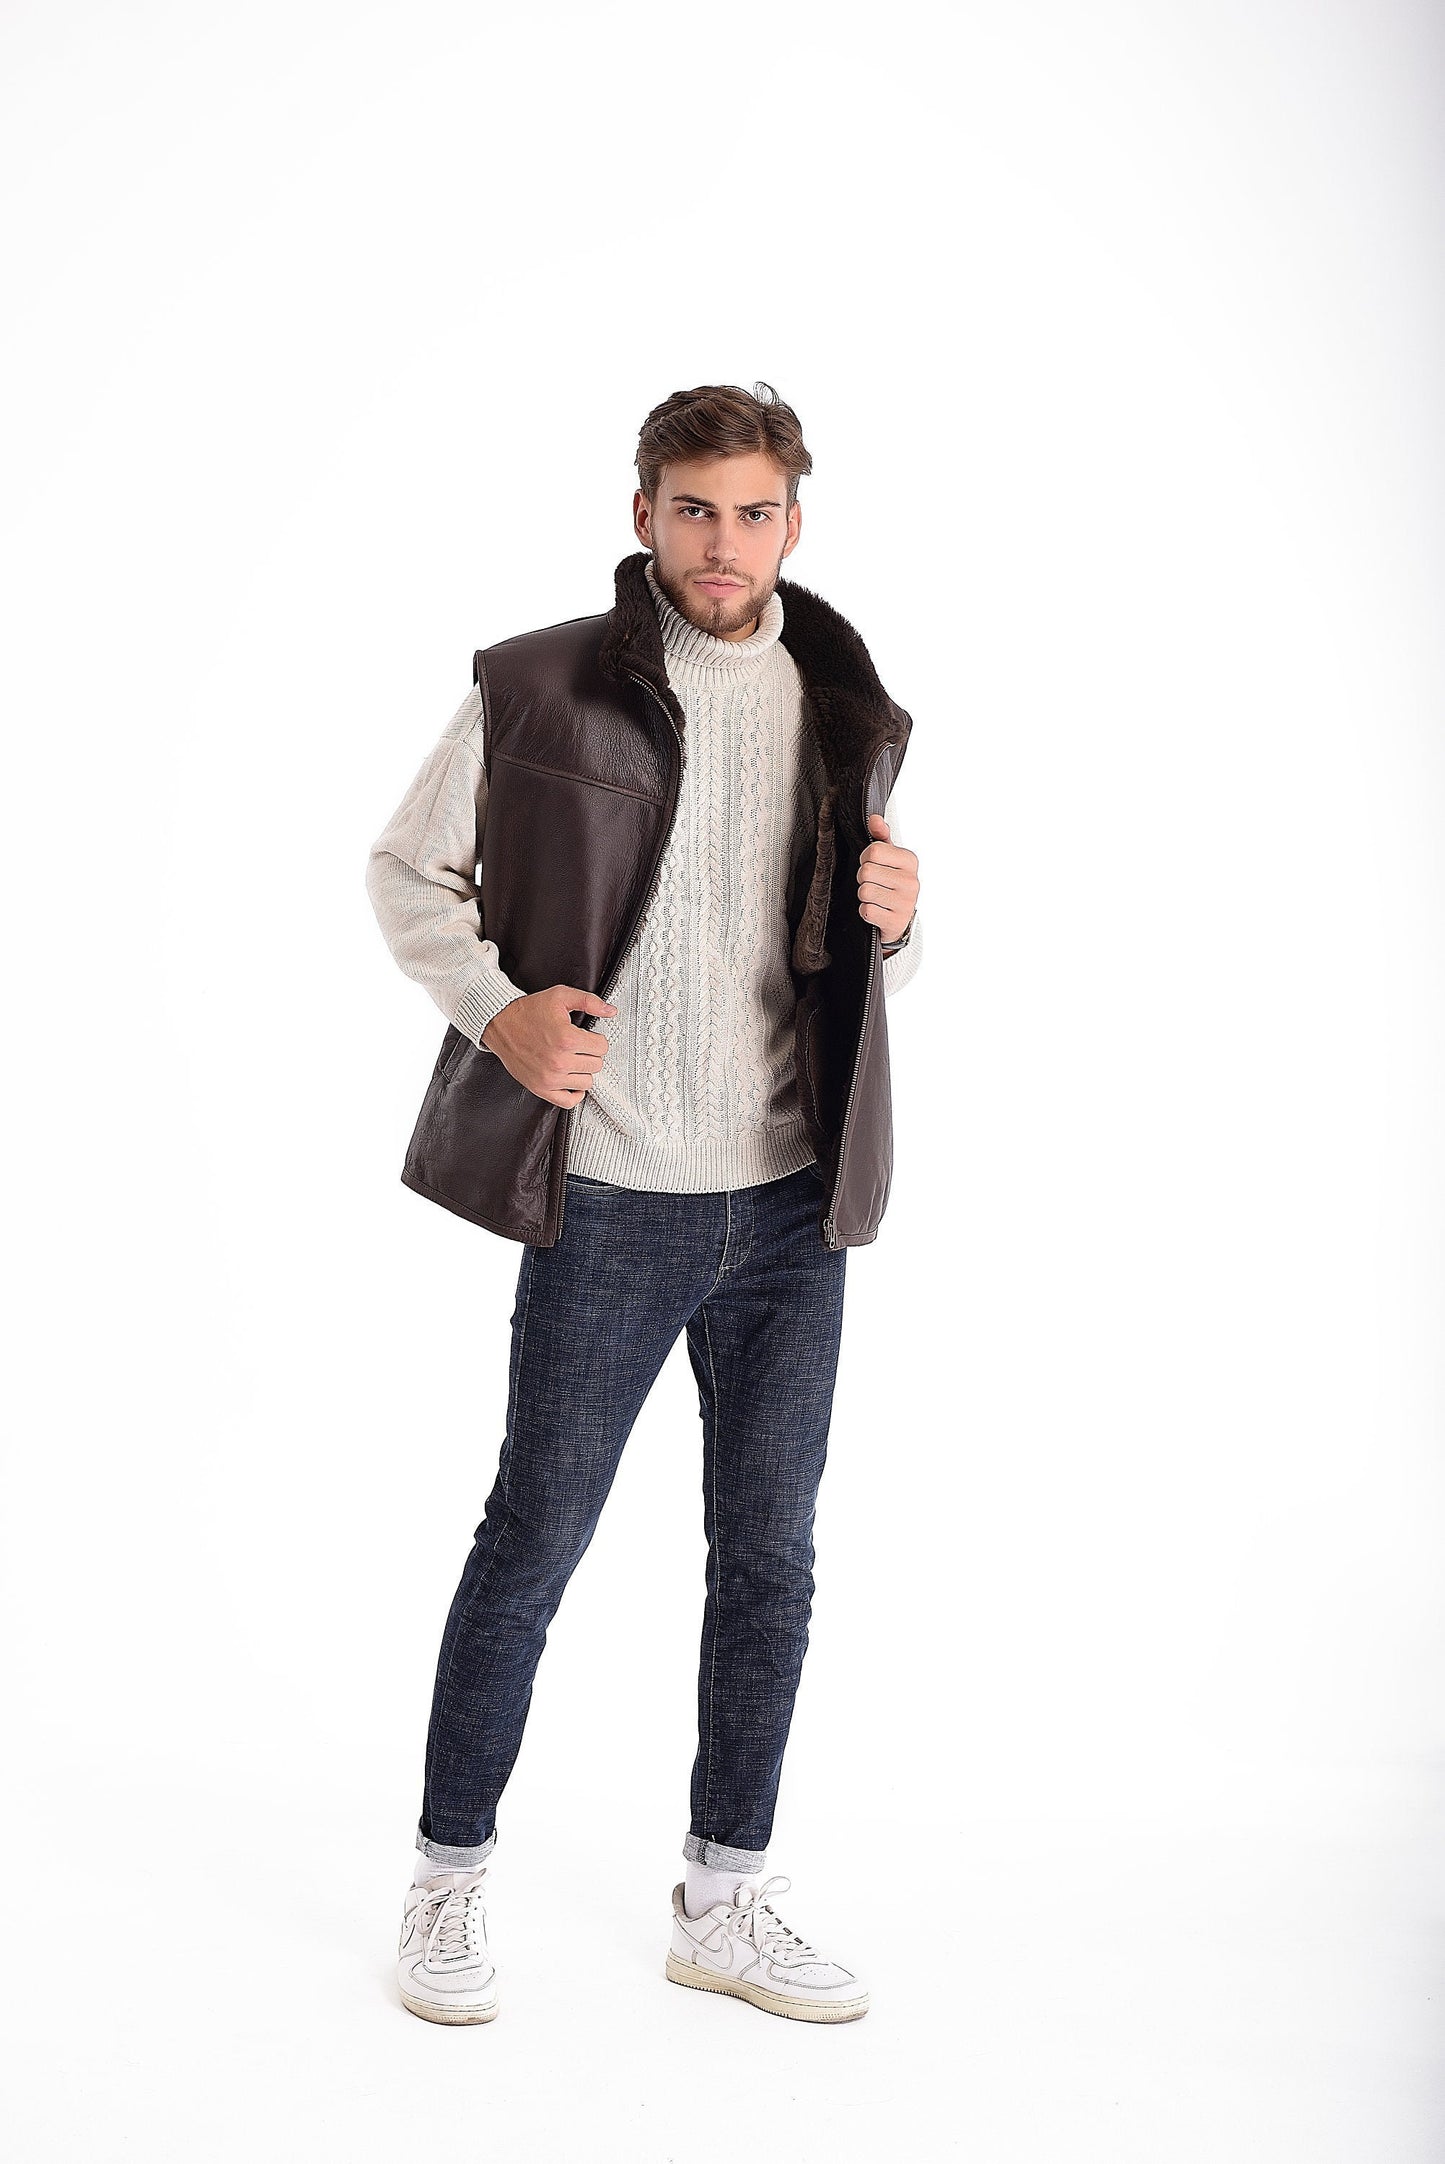 Dark Brown Sheepskin Vest with Dark Fur Lining and Side Pockets